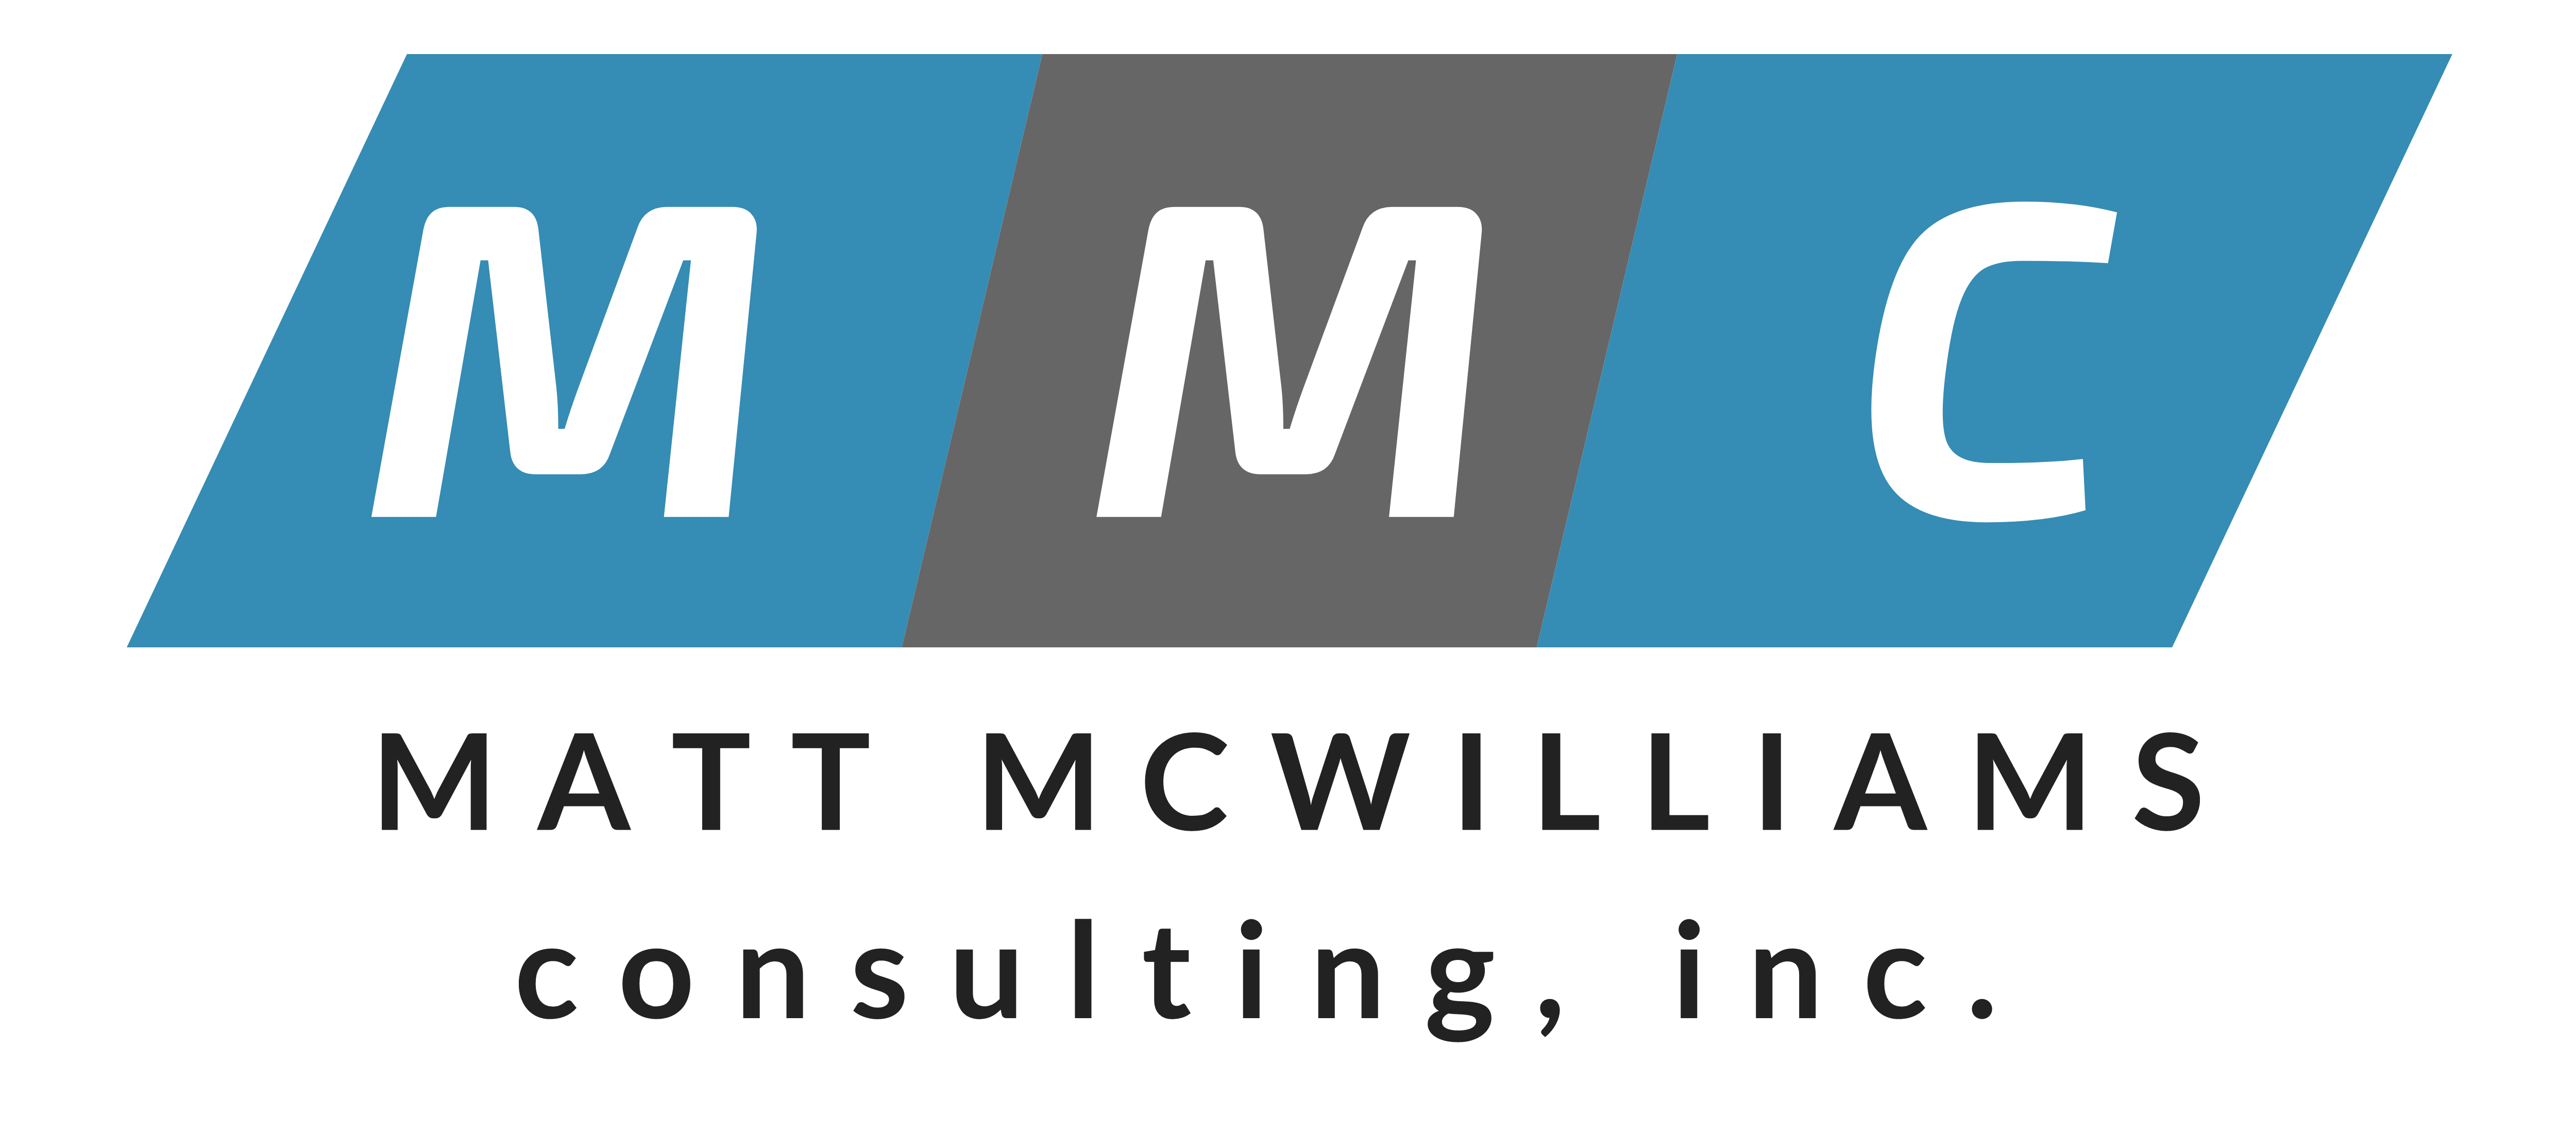 Matt McWilliams affiliate manager